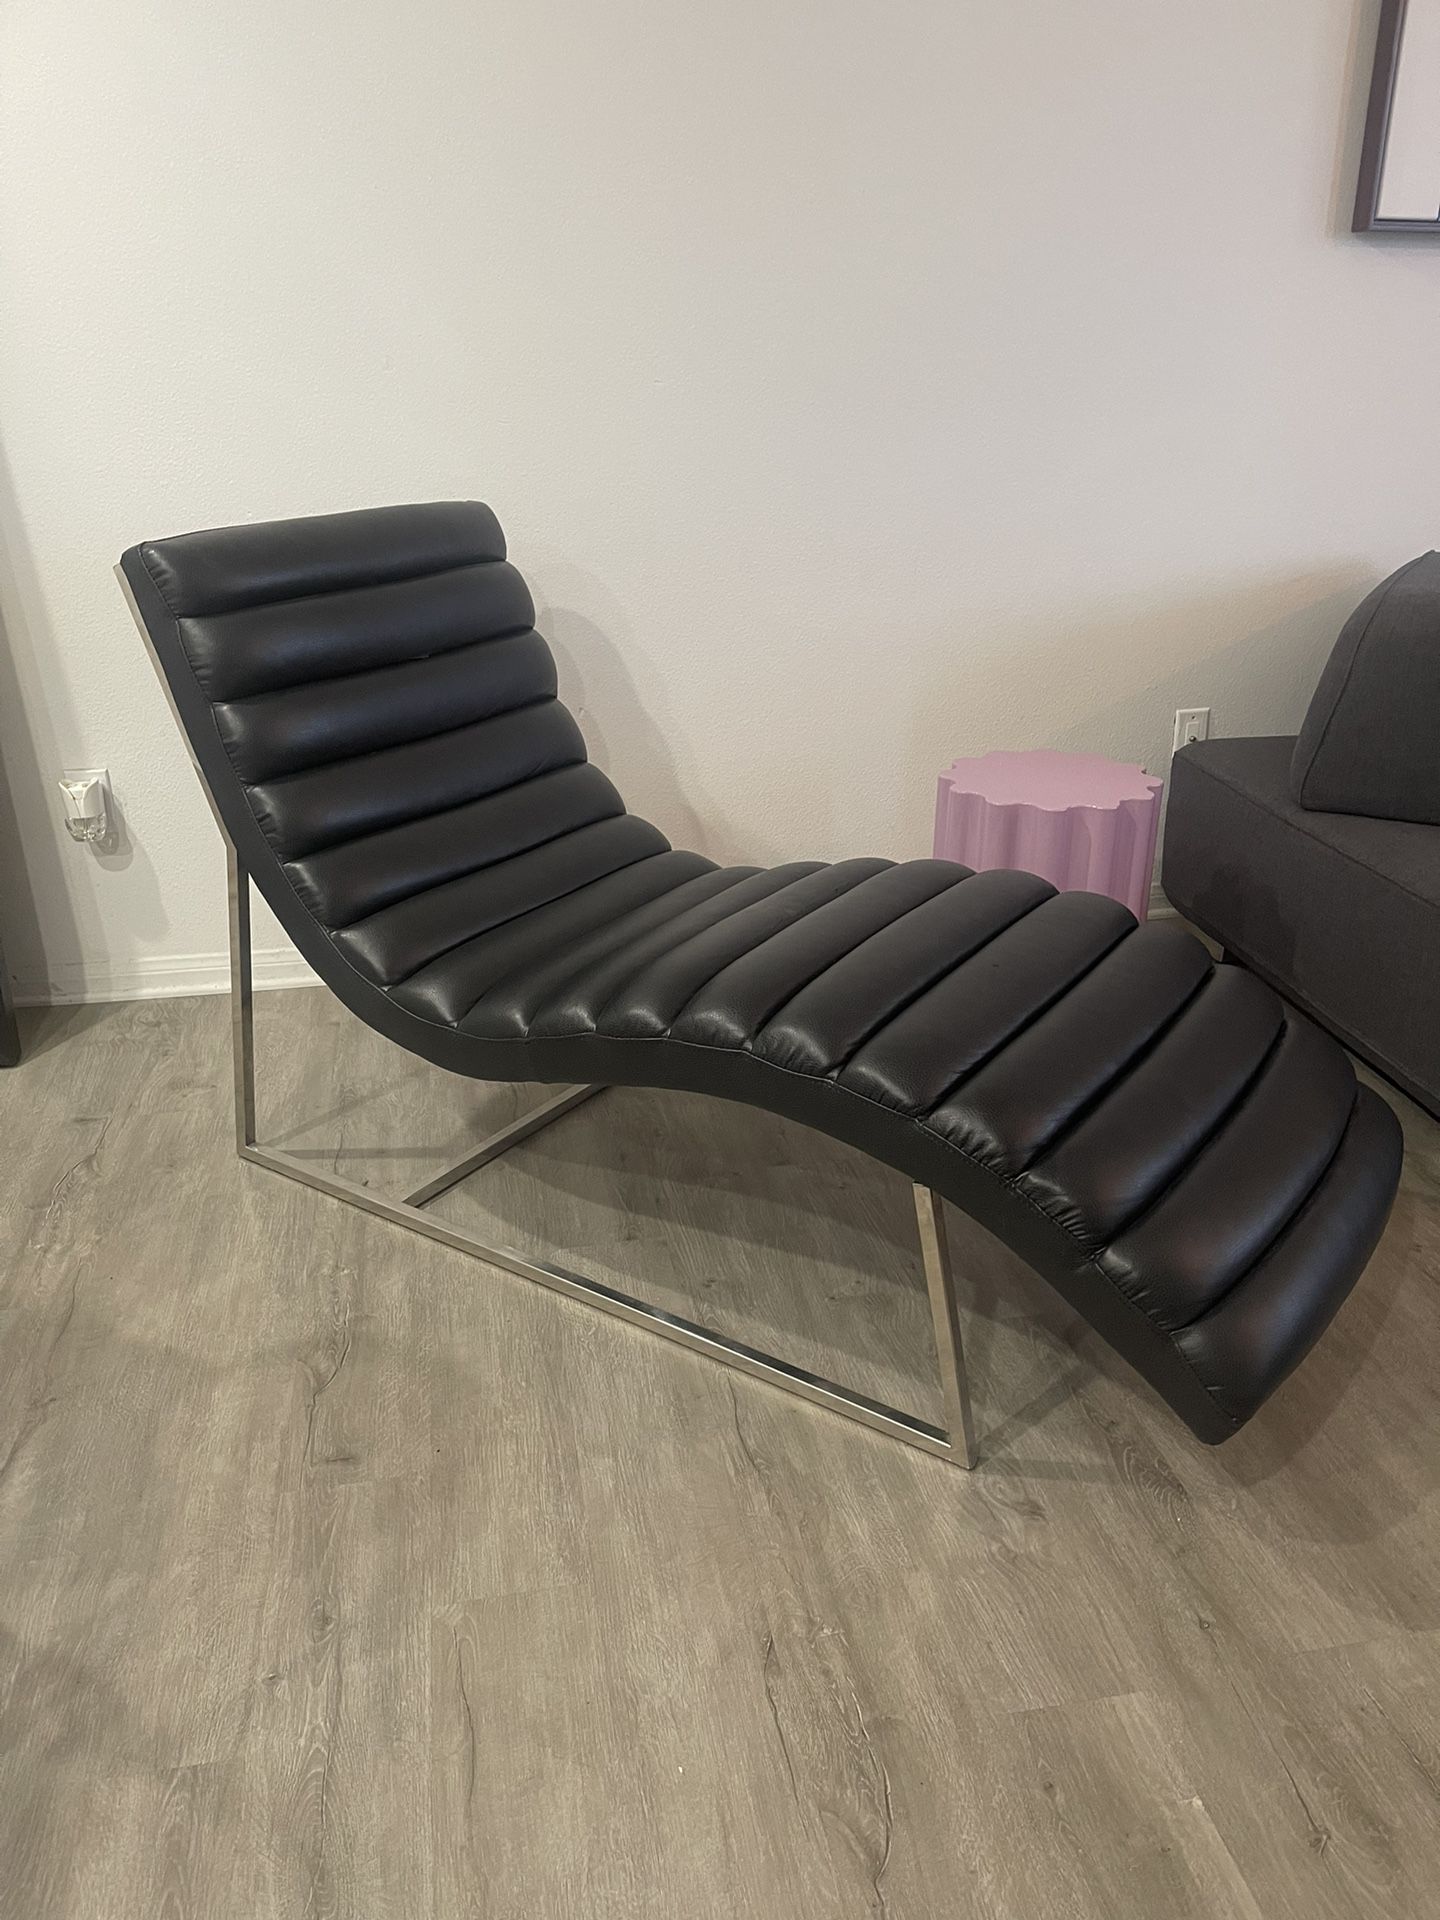 Chaise Lounge Chair Sofa - Black & Chrome